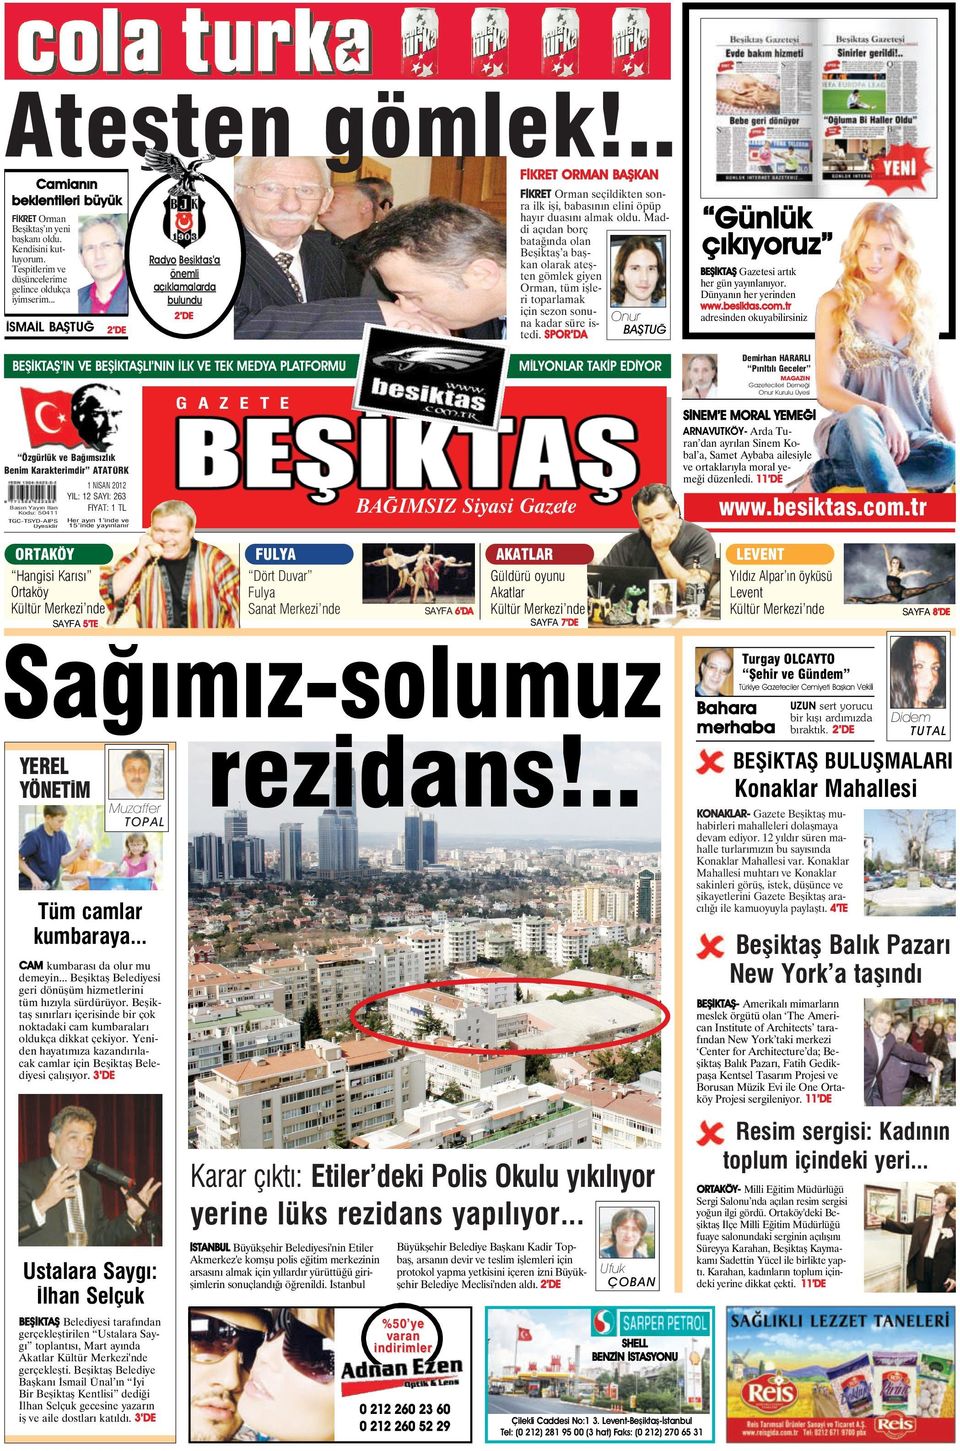 Maddi açıdan borç batağında olan Beşiktaş a başkan olarak ateşten gömlek giyen Orman, tüm işleri toparlamak için sezon sonuonur na kadar süre isbaştuğ tedi.